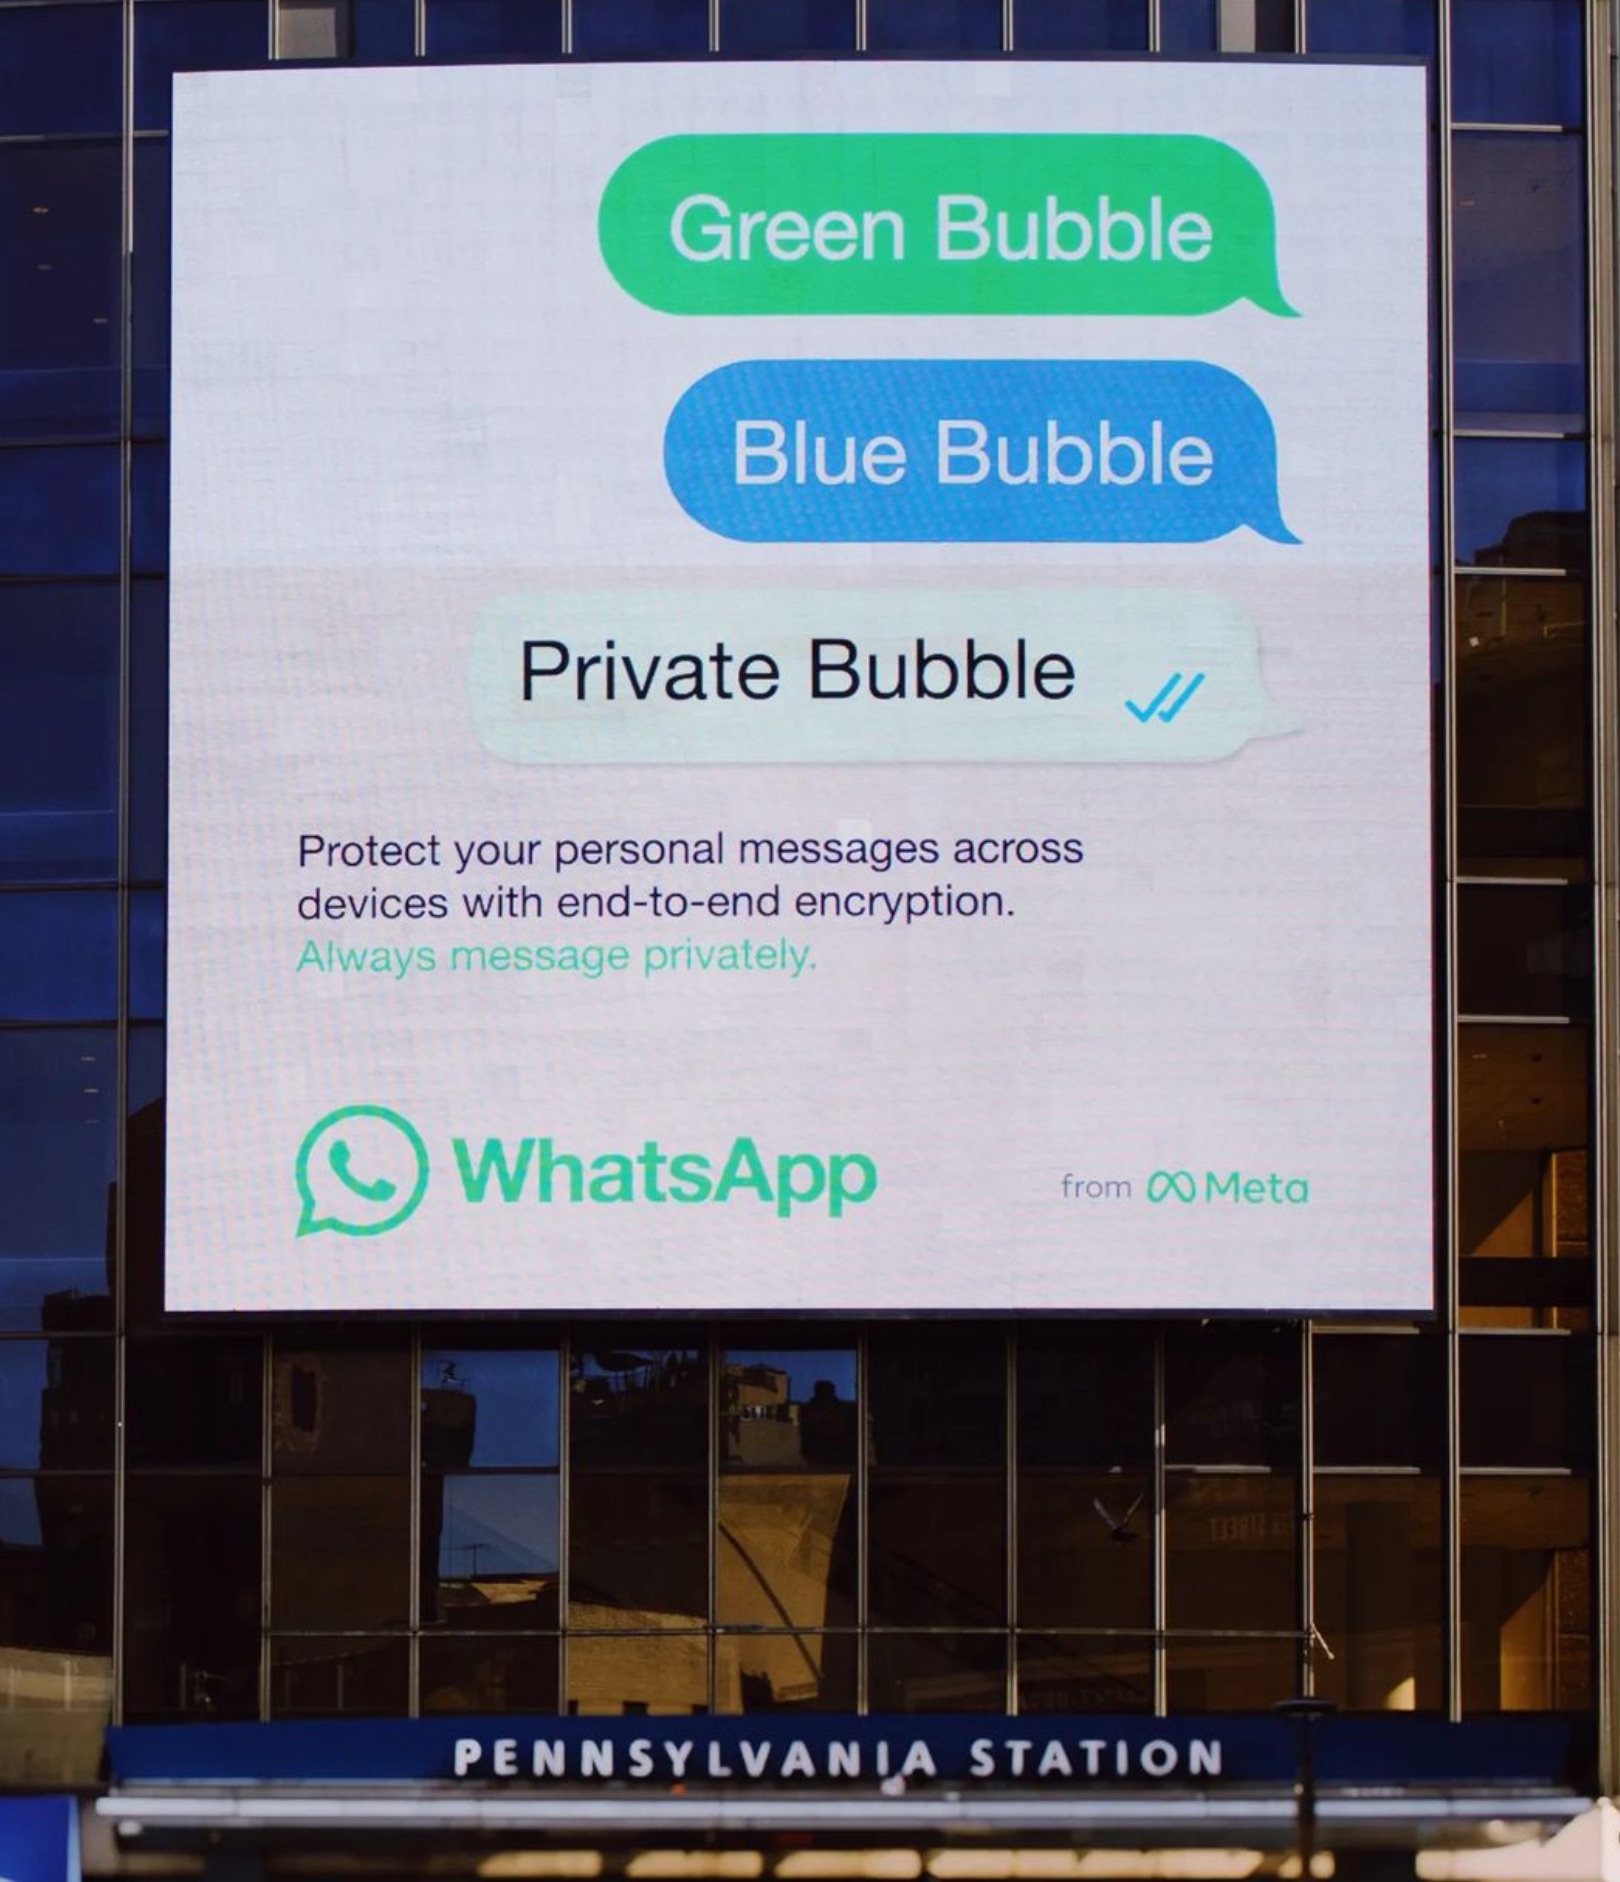 Publicidad comparativa que indica que WhatsApp es más seguro que iMessage